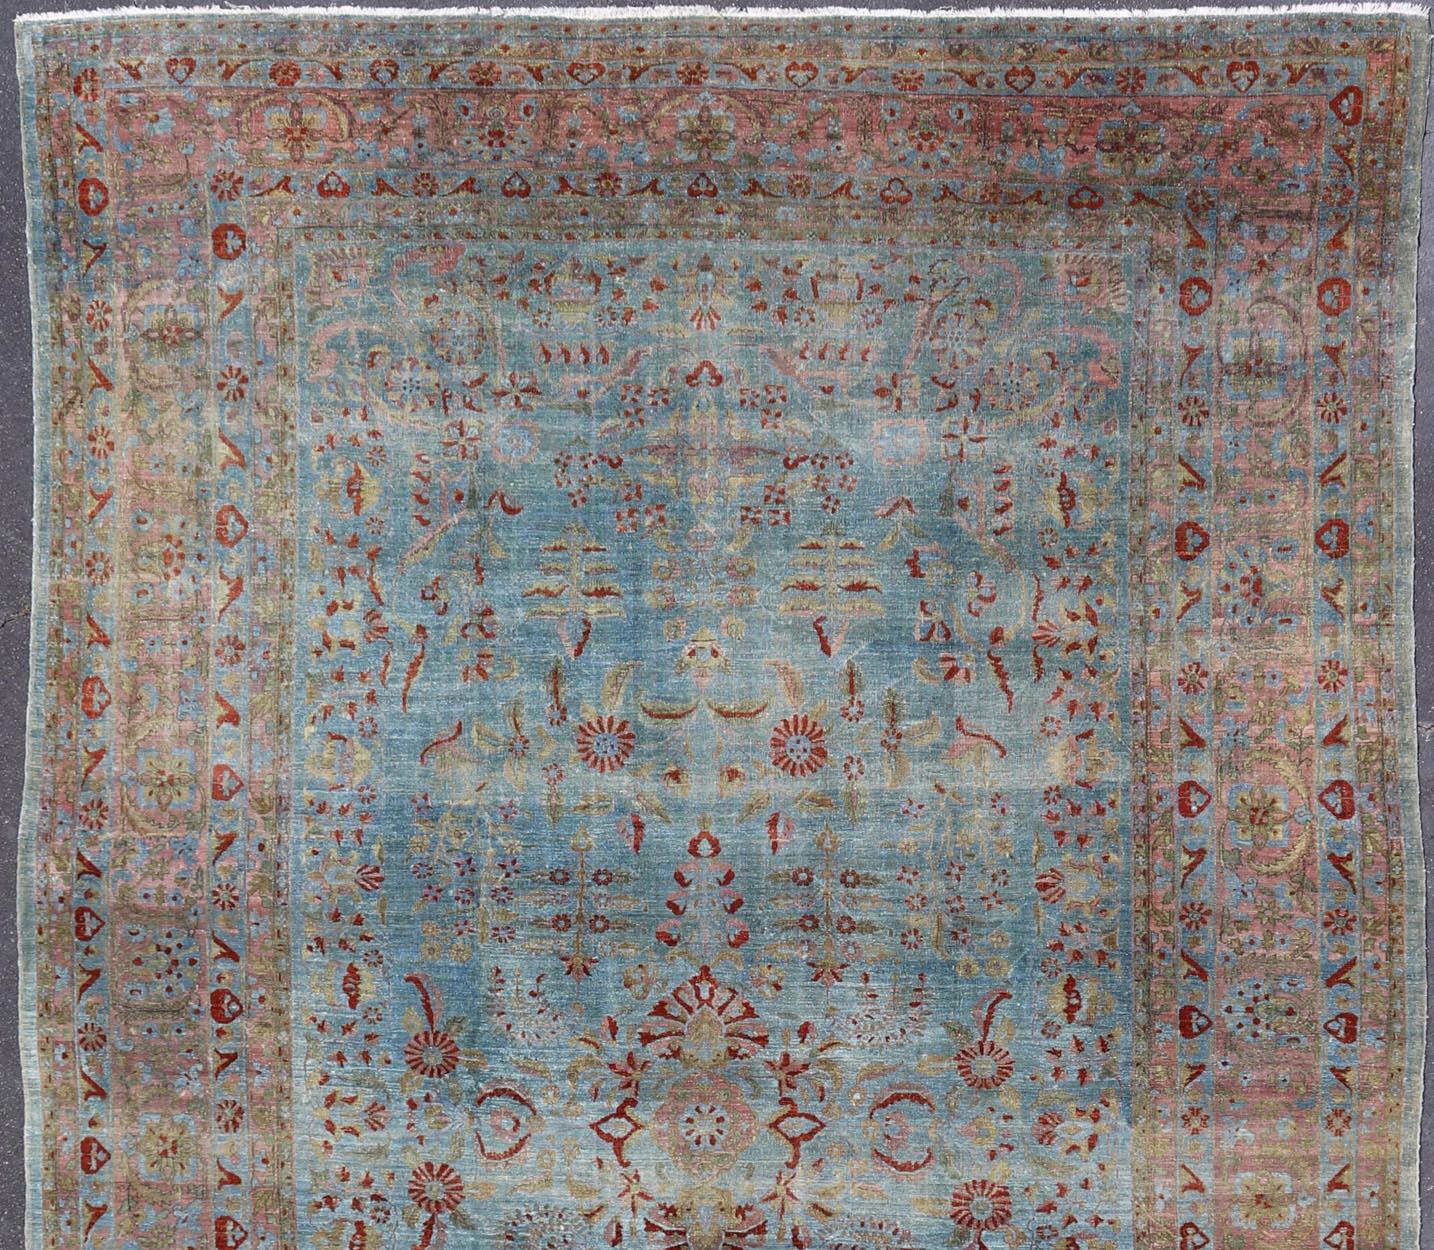 Blauer Hintergrund antiker persischer Sarouk-Teppich mit roten und säuregrünen Blumen. Keivan Woven Arts / Teppich L11-0305, Herkunftsland / Art: Iran / Sarouk Farahan, um 1910. 
Maße: 10'11 x 17'2
Dieser hervorragende antike Farahan-Sarouk-Teppich